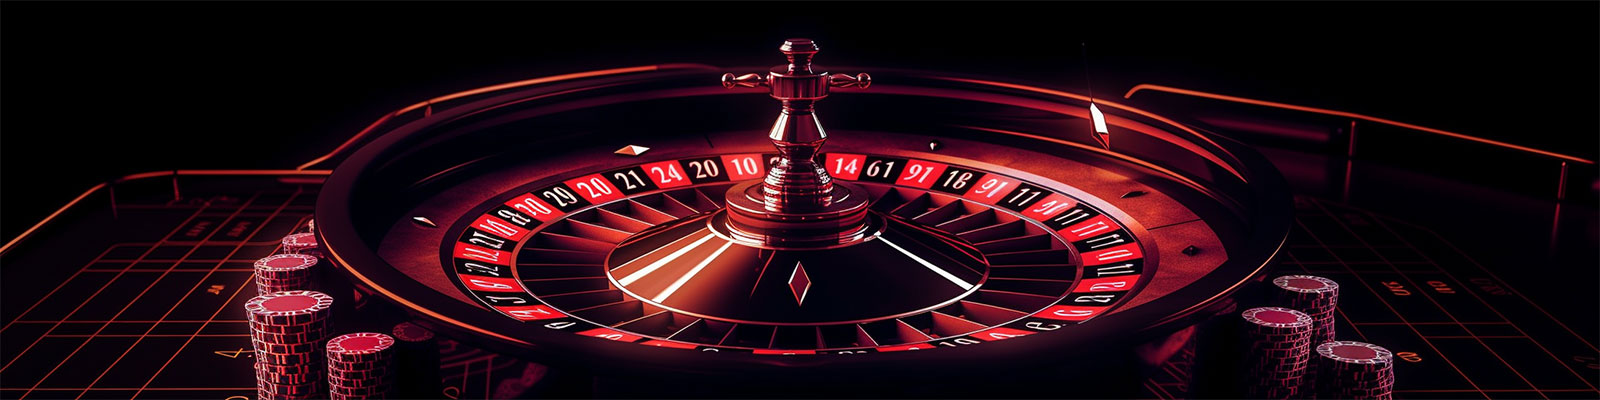 meilleurs casinos en ligne sans vérification visuel numéro 2